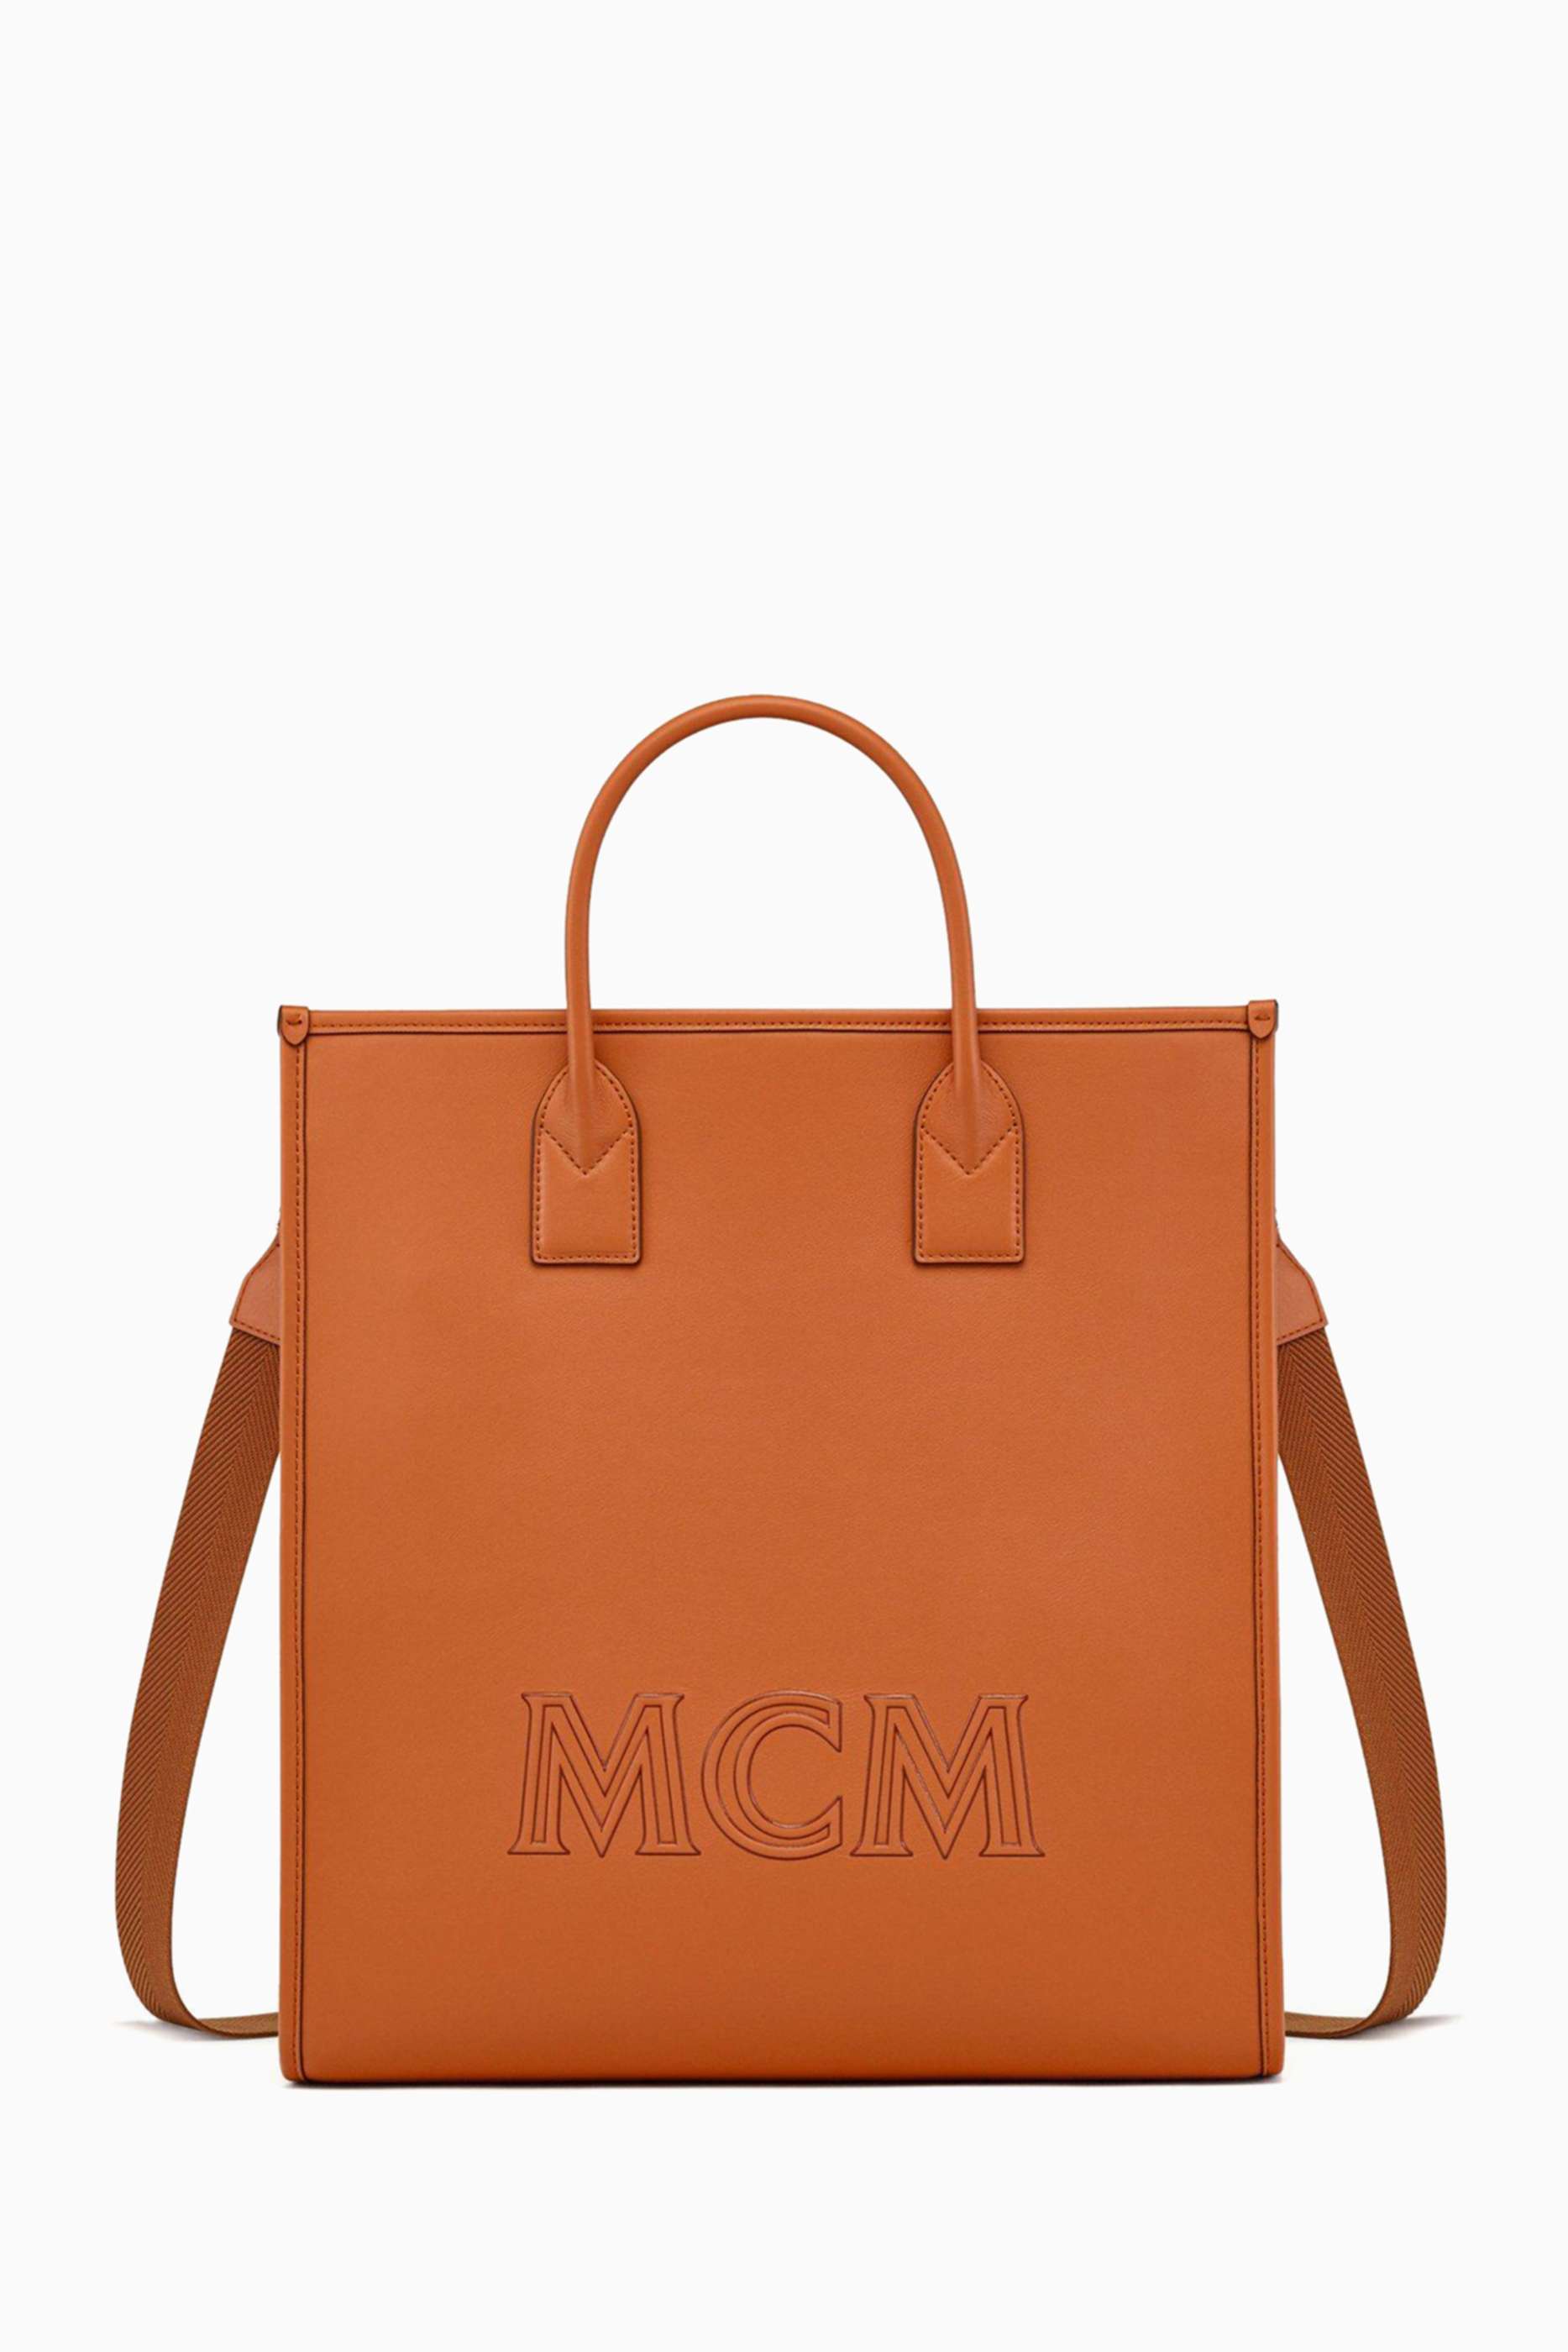 shop-mcm-medium-klassik-tote-bag-in-spanish-calf-leather-for-women